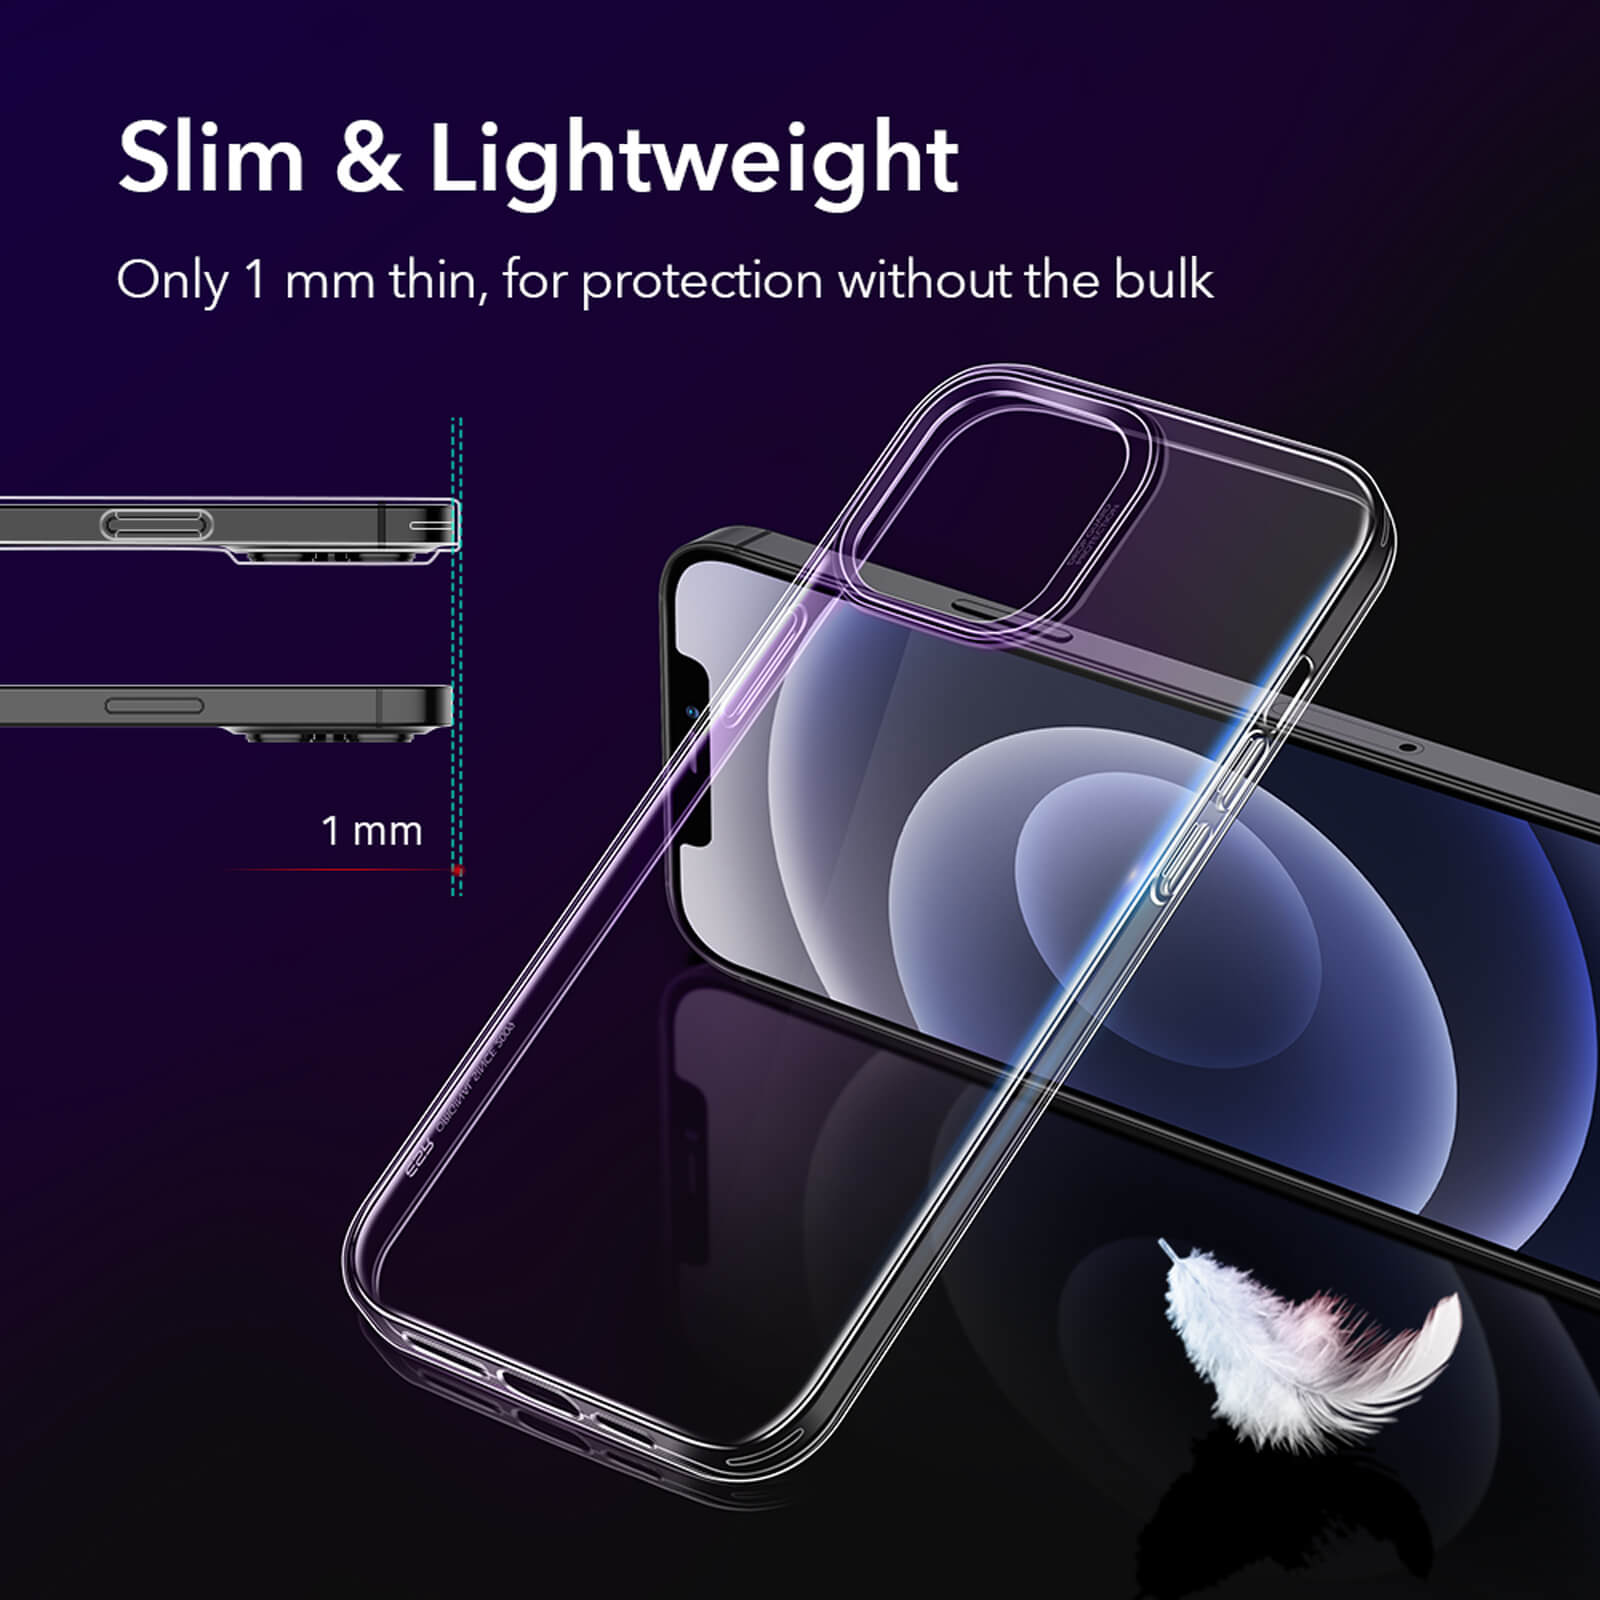 Ốp lưng chống sốc trong suốt siêu mỏng 1mm cho iPhone 13 Pro Max hiệu Memumi Glitter (độ trong tuyệt đối, chống trầy xước, chống ố vàng, tản nhiệt tốt) - hàng nhập khẩu